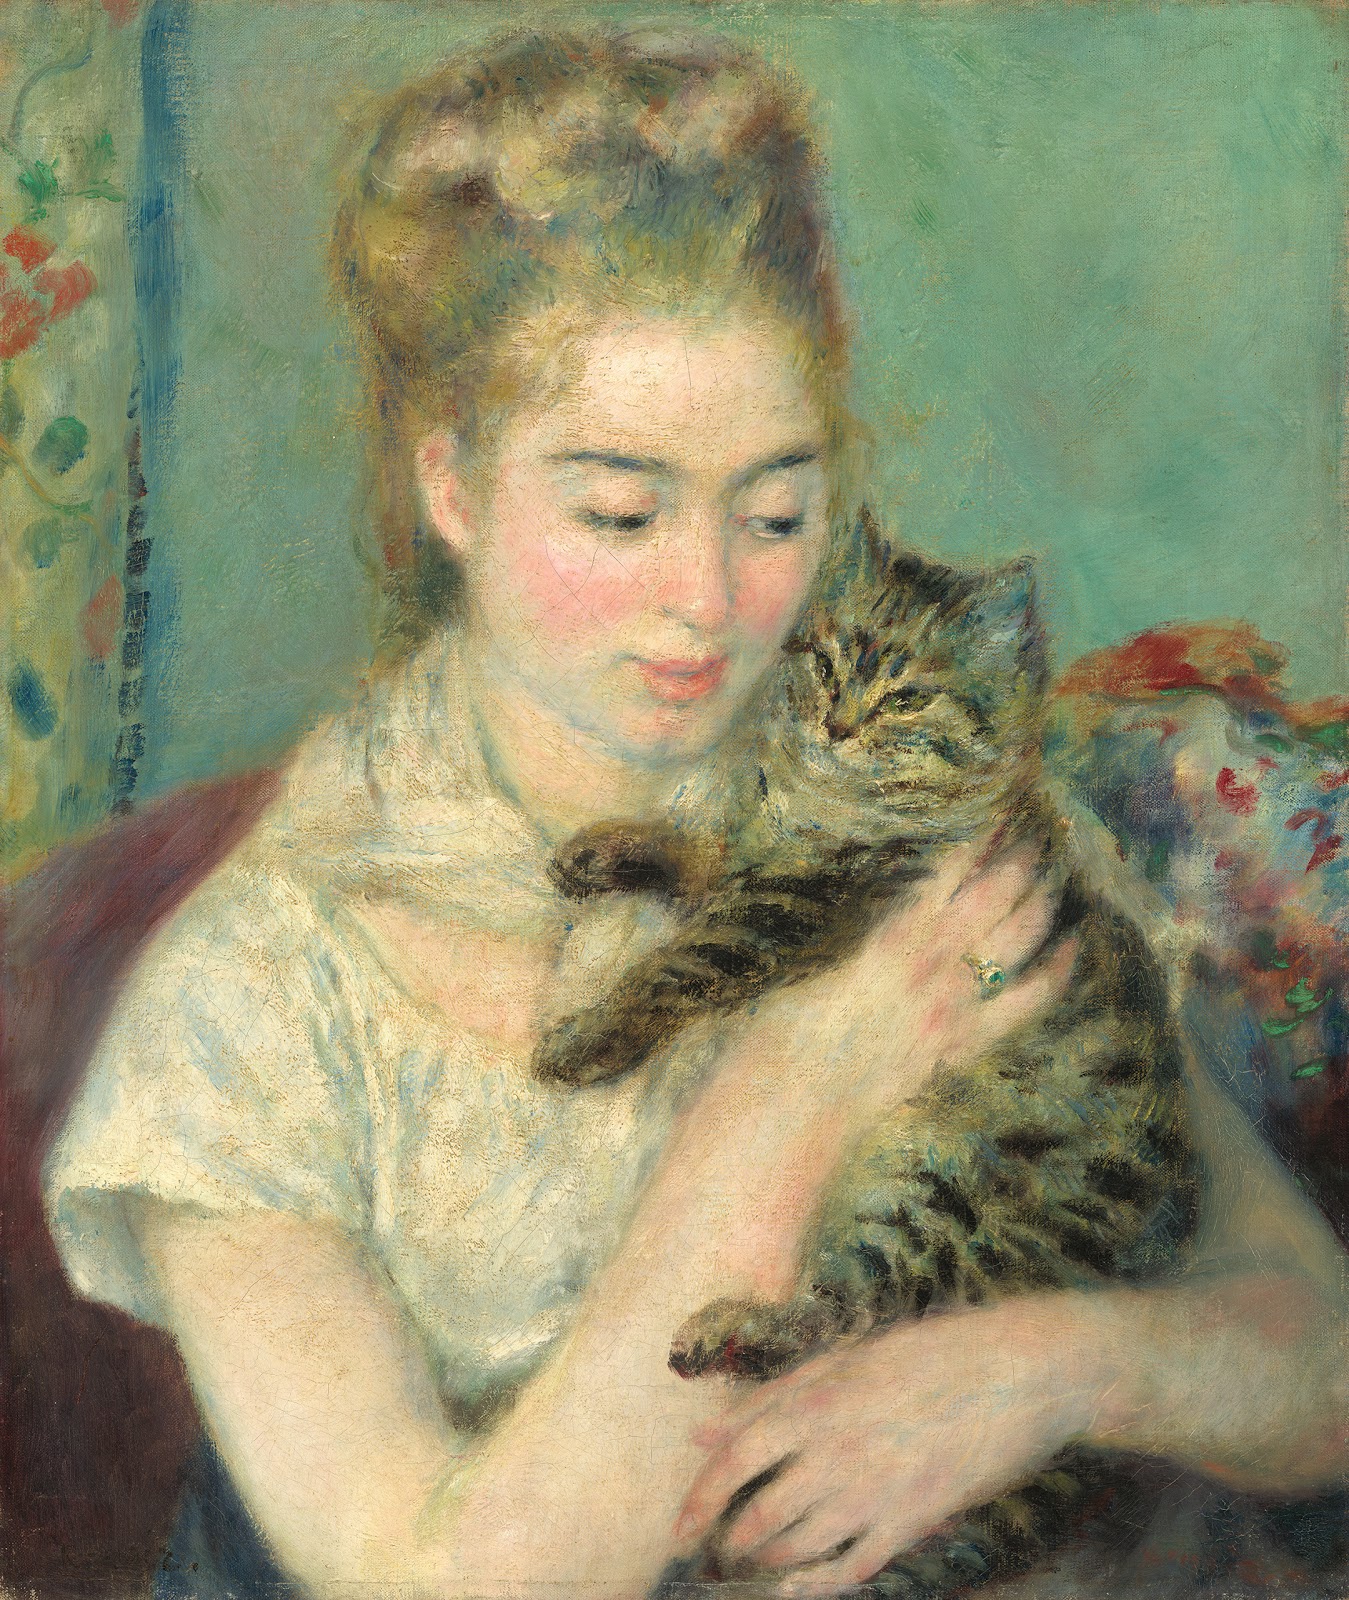 Pierre+Auguste+Renoir-1841-1-19 (241).jpg